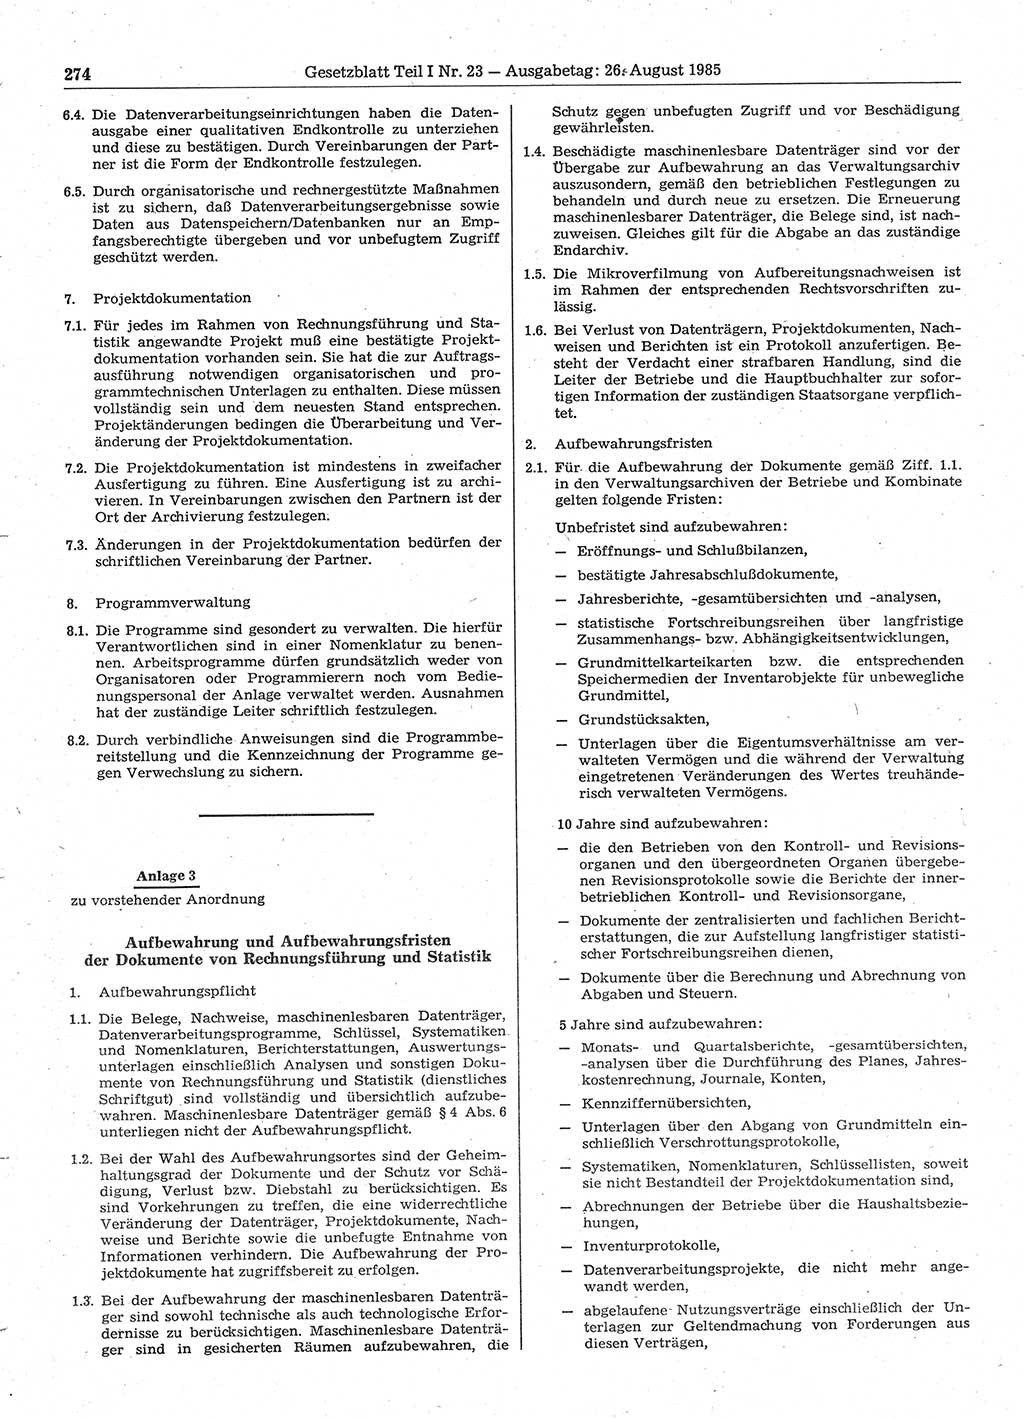 Gesetzblatt (GBl.) der Deutschen Demokratischen Republik (DDR) Teil Ⅰ 1985, Seite 274 (GBl. DDR Ⅰ 1985, S. 274)